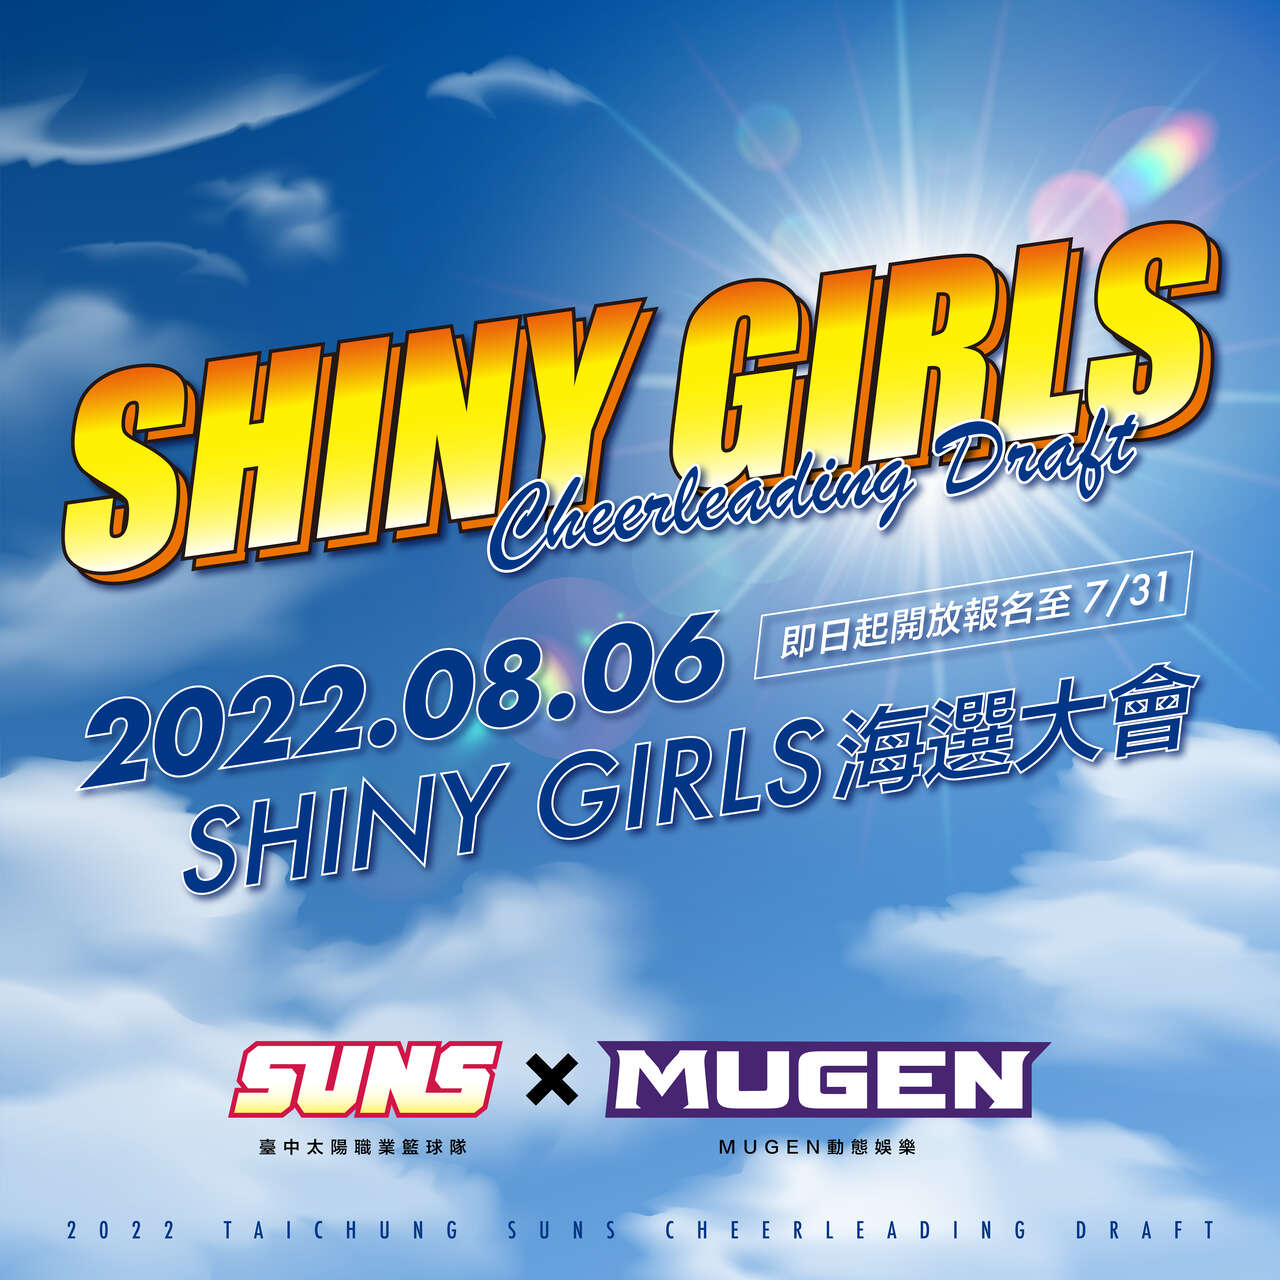 臺中太陽專屬啦啦隊Shiny Girls全新徵選開跑啦。官方提供